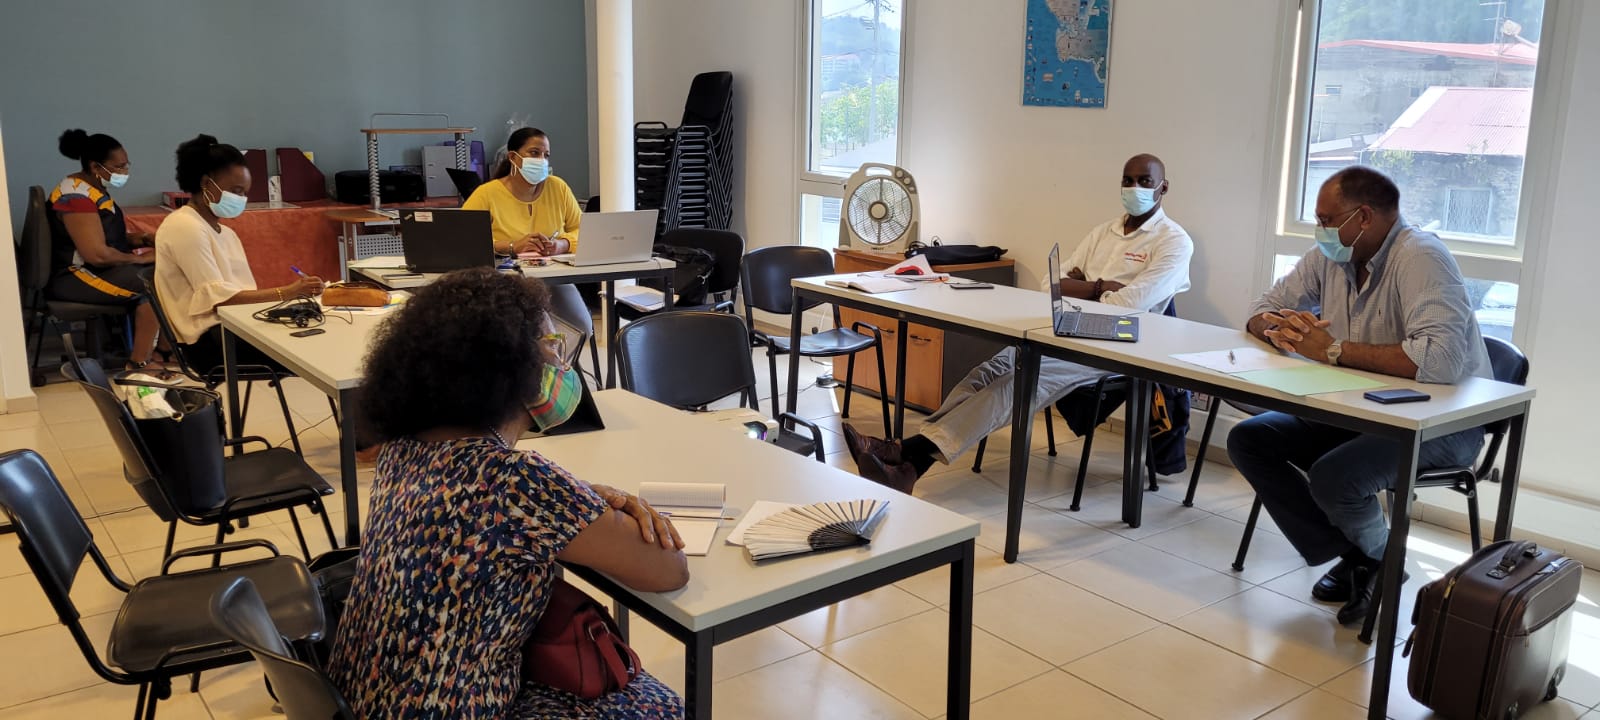 Présentation à l’OTI de Cap Nord Martinique du label européen Odyssea et des Routes Bleues Mythiques, pour une relance touristique inclusive et durable